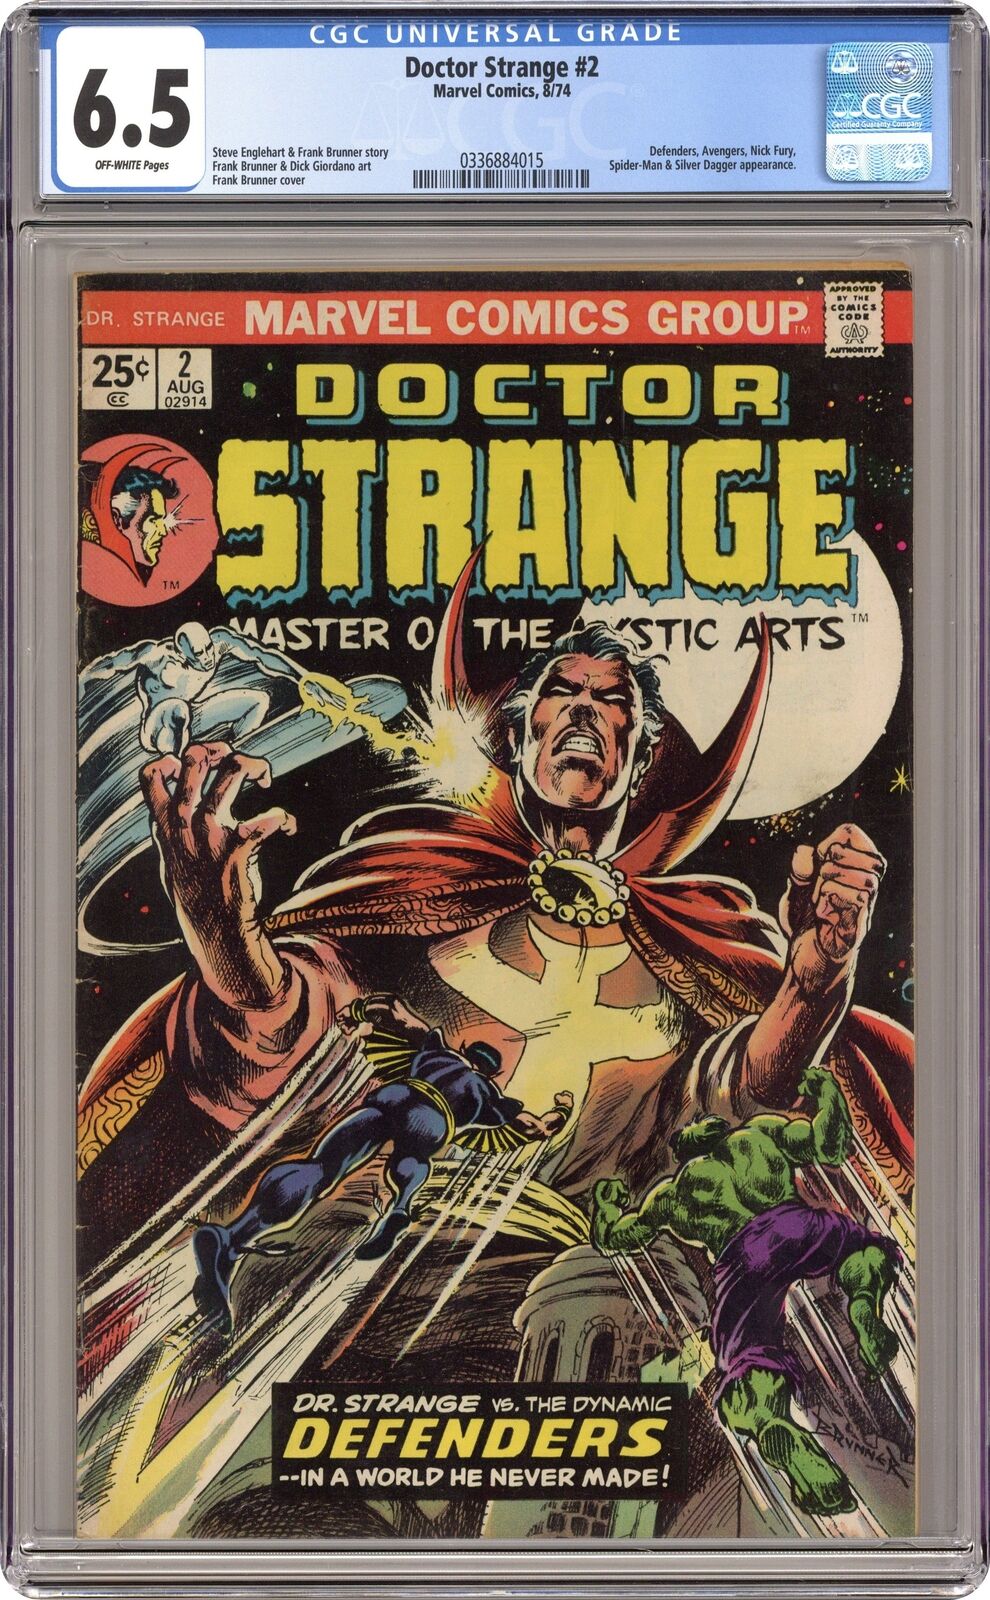 Doctor Strange #2 CGC 6.5 1974 0336884015